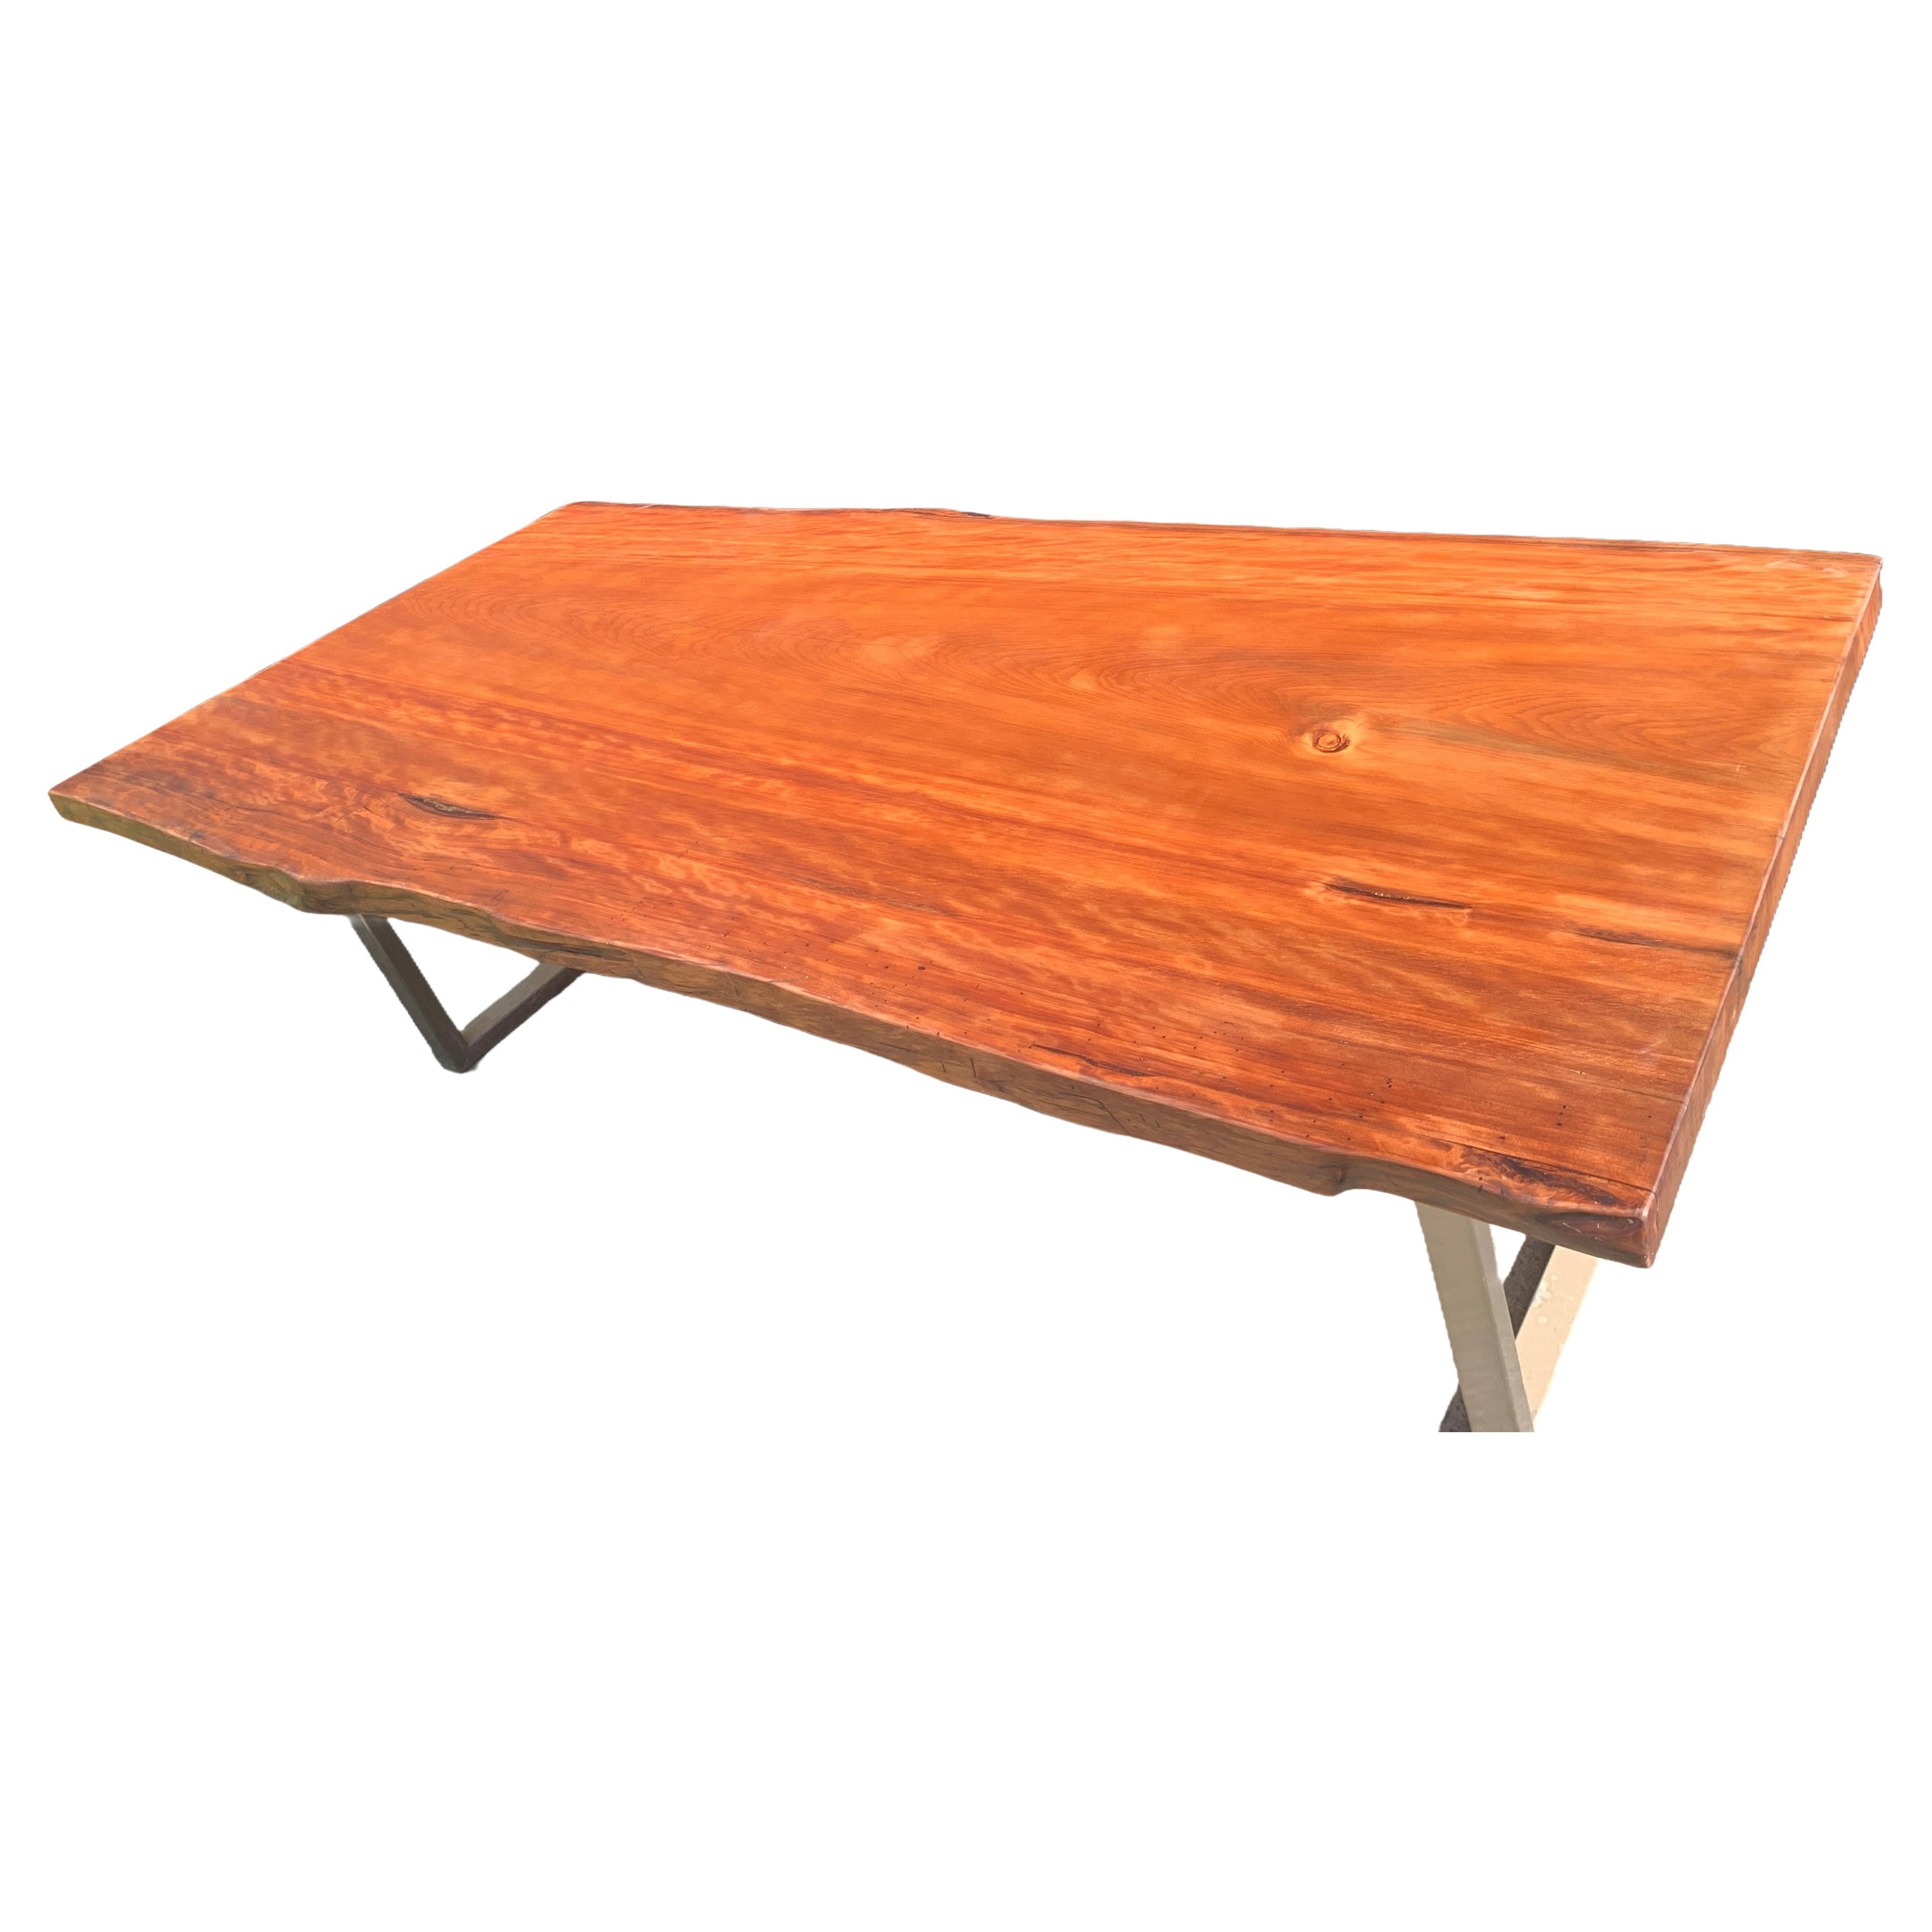 Runder Kauri-Esstisch 2,4 m x 1,2 m aus massivem, antikem Kauri-Holz